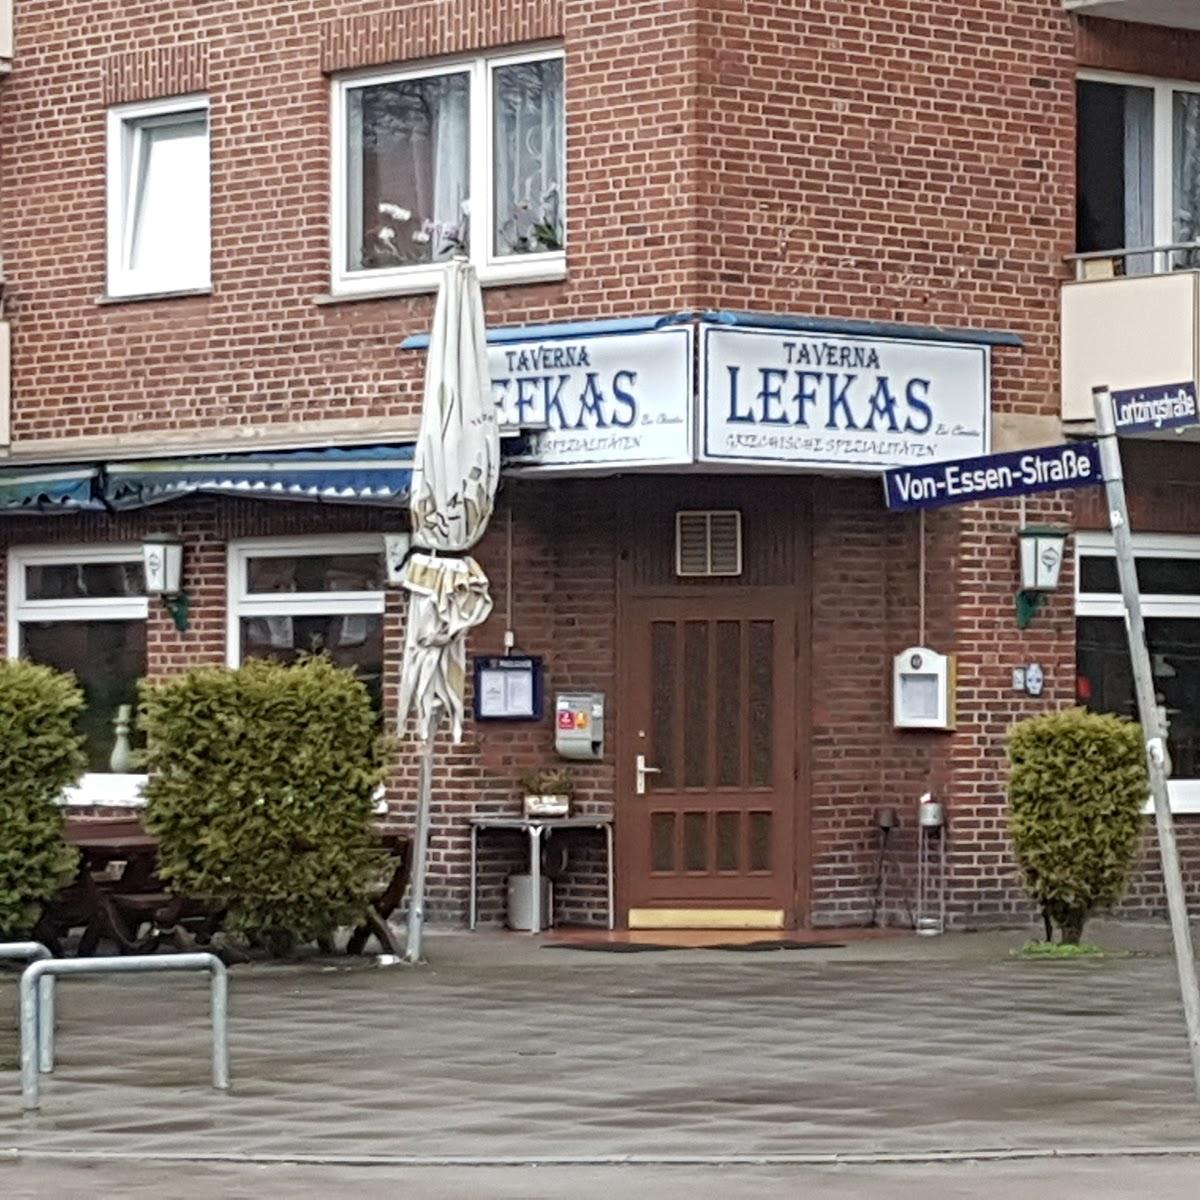 Restaurant "Taverna Lefkas" in Hamburg